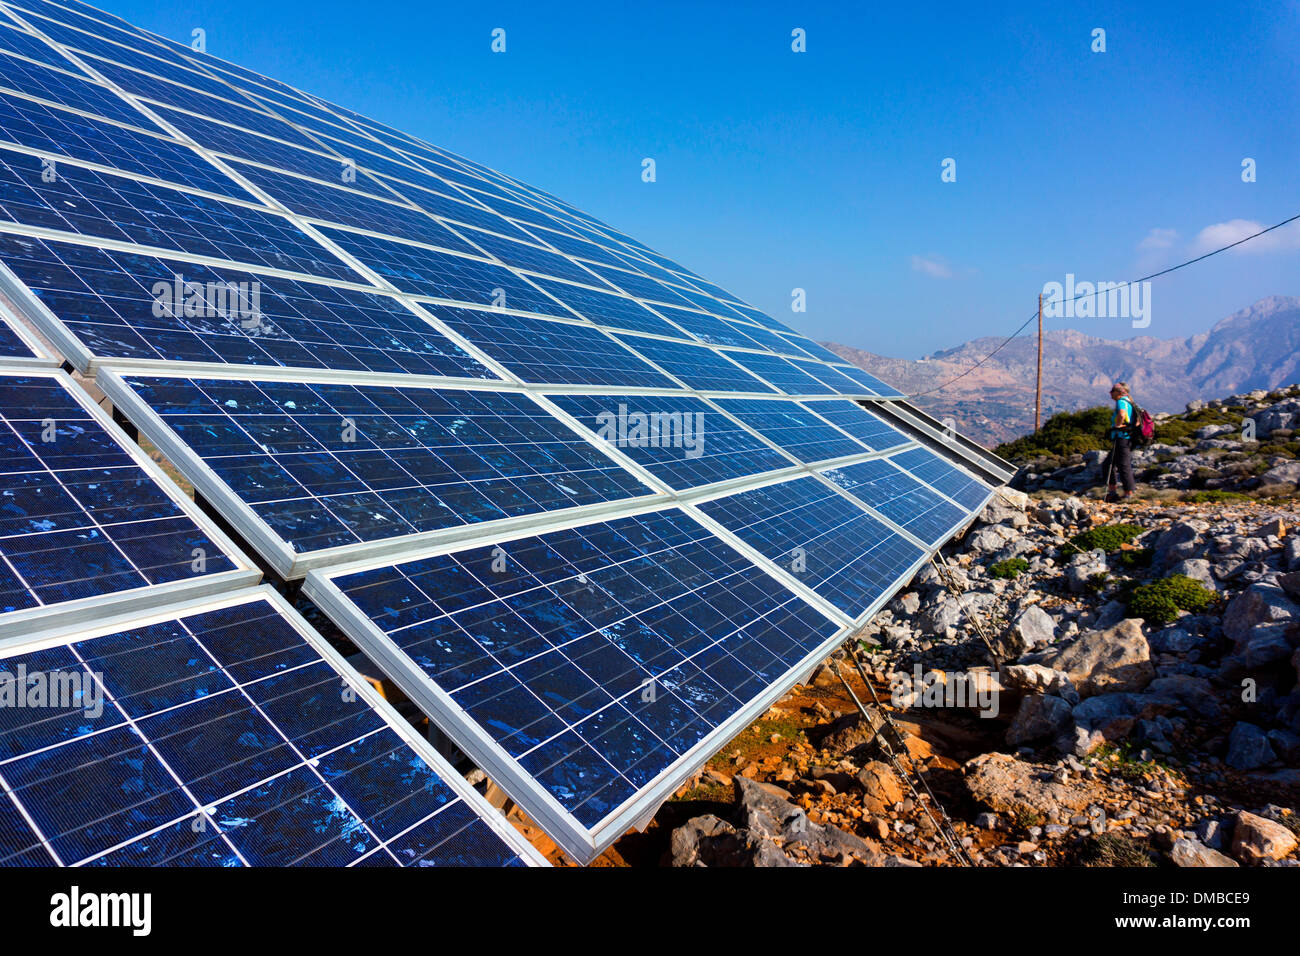 Blue foto-voltaico pannelli solari contro un cielo blu Foto Stock